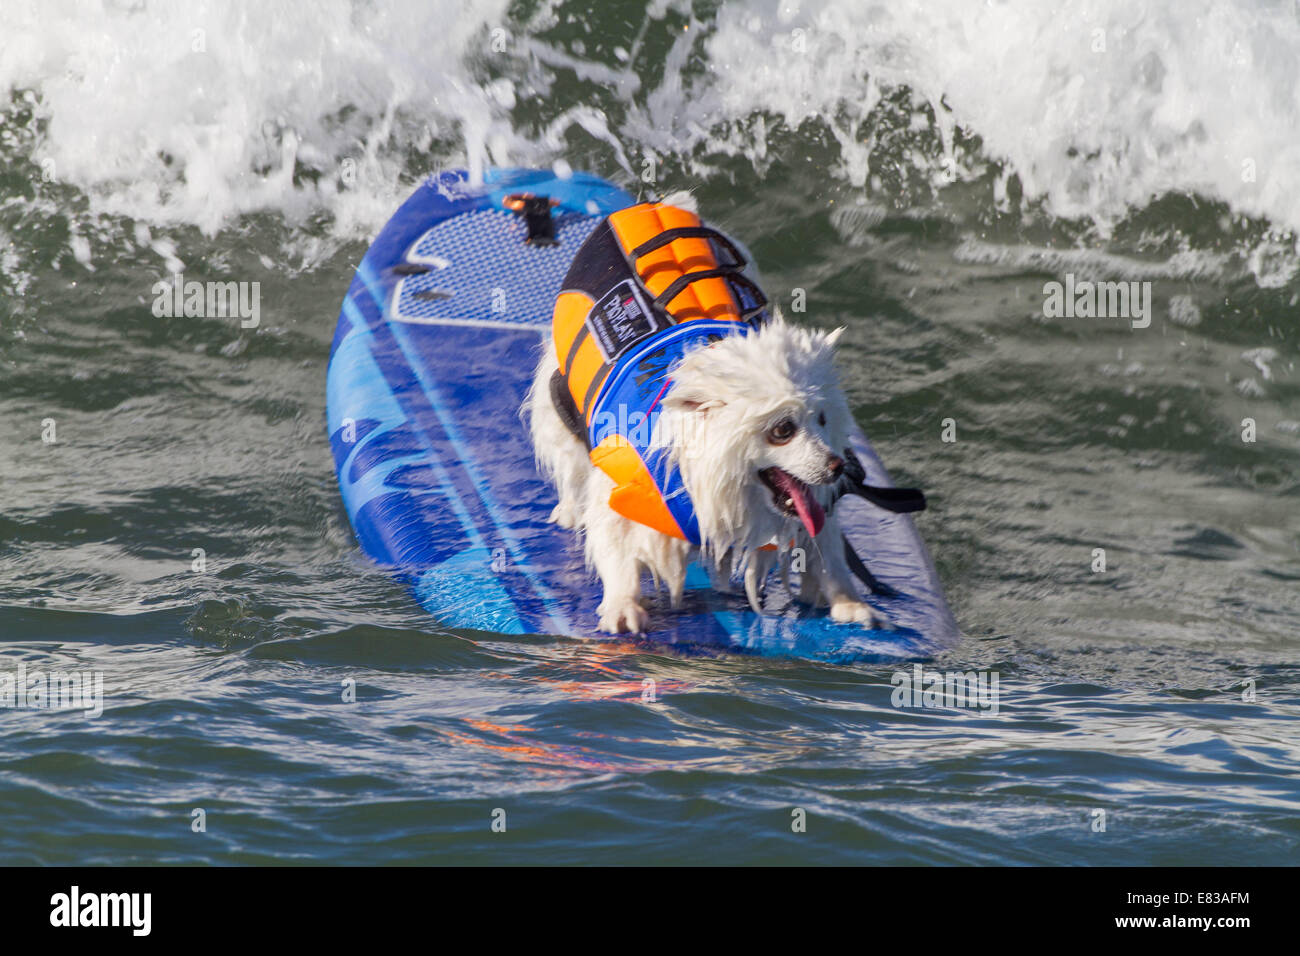 28. September 2014 kam - Huntington, CA, USA - weltberühmten Unleashed durch Petco Surf City Surf DogÂ® Wettbewerb Hunde von ganz über dem Land, in den rauen Gewässern aus Huntington Beach, Kalifornien zu konkurrieren. Einige Teilnehmer kamen aus so weit wie Brasilien. Der Strand war voll mit gut aussehenden, Hundeliebhaber und Surfer gleichermaßen. Es gab mehrere Kategorien von kleinen Hunden zu groß... Sehen Sie hier: (Credit-Bild: © Daren Fentiman/ZUMA Draht) Stockfoto